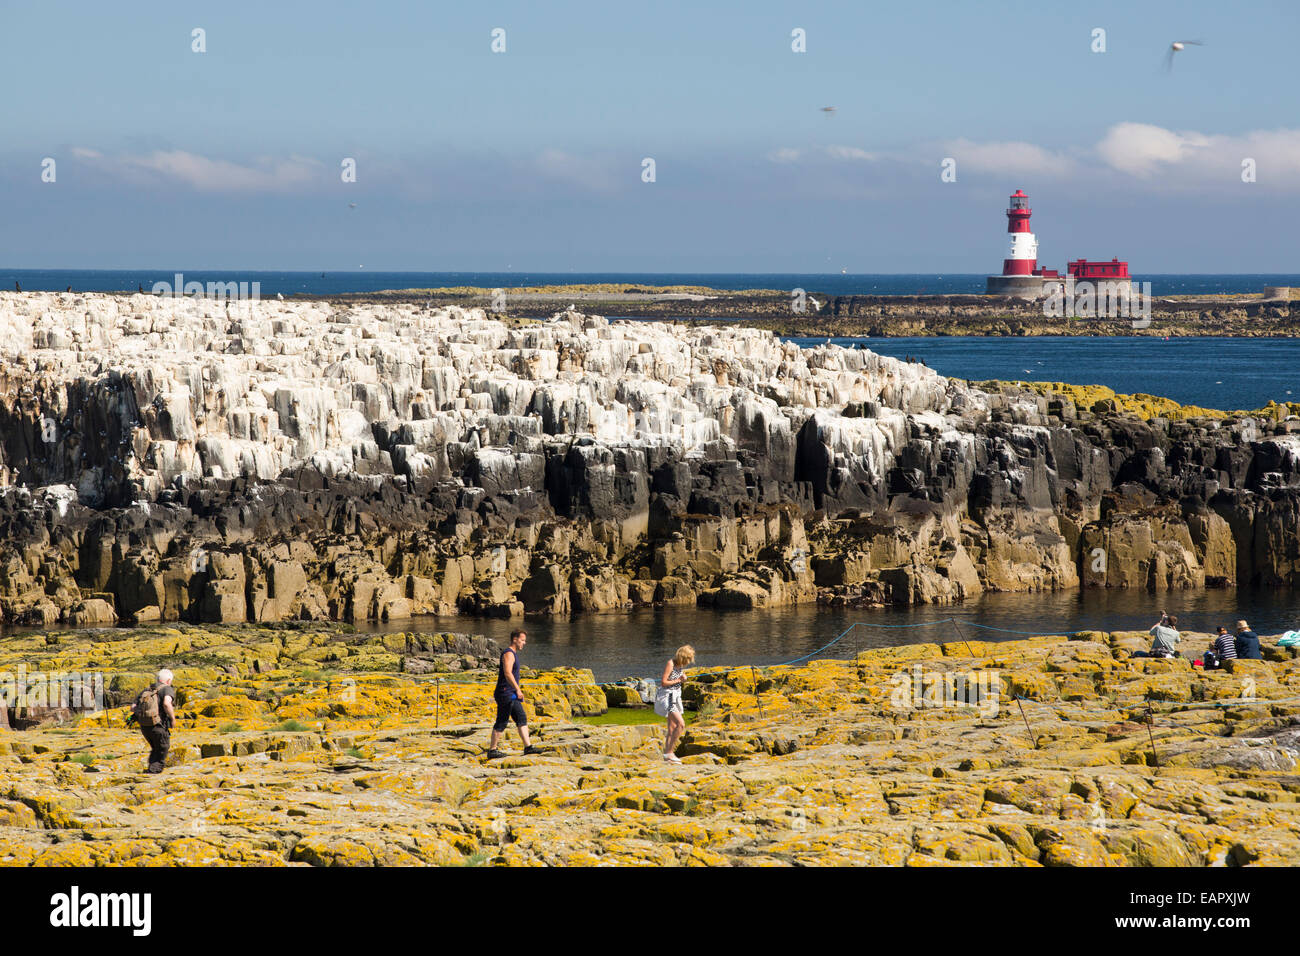 Les touristes sur les îles Farne, Northumberland, Angleterre, parmi les oiseaux marins, avec le phare de Longstone derrière. Banque D'Images